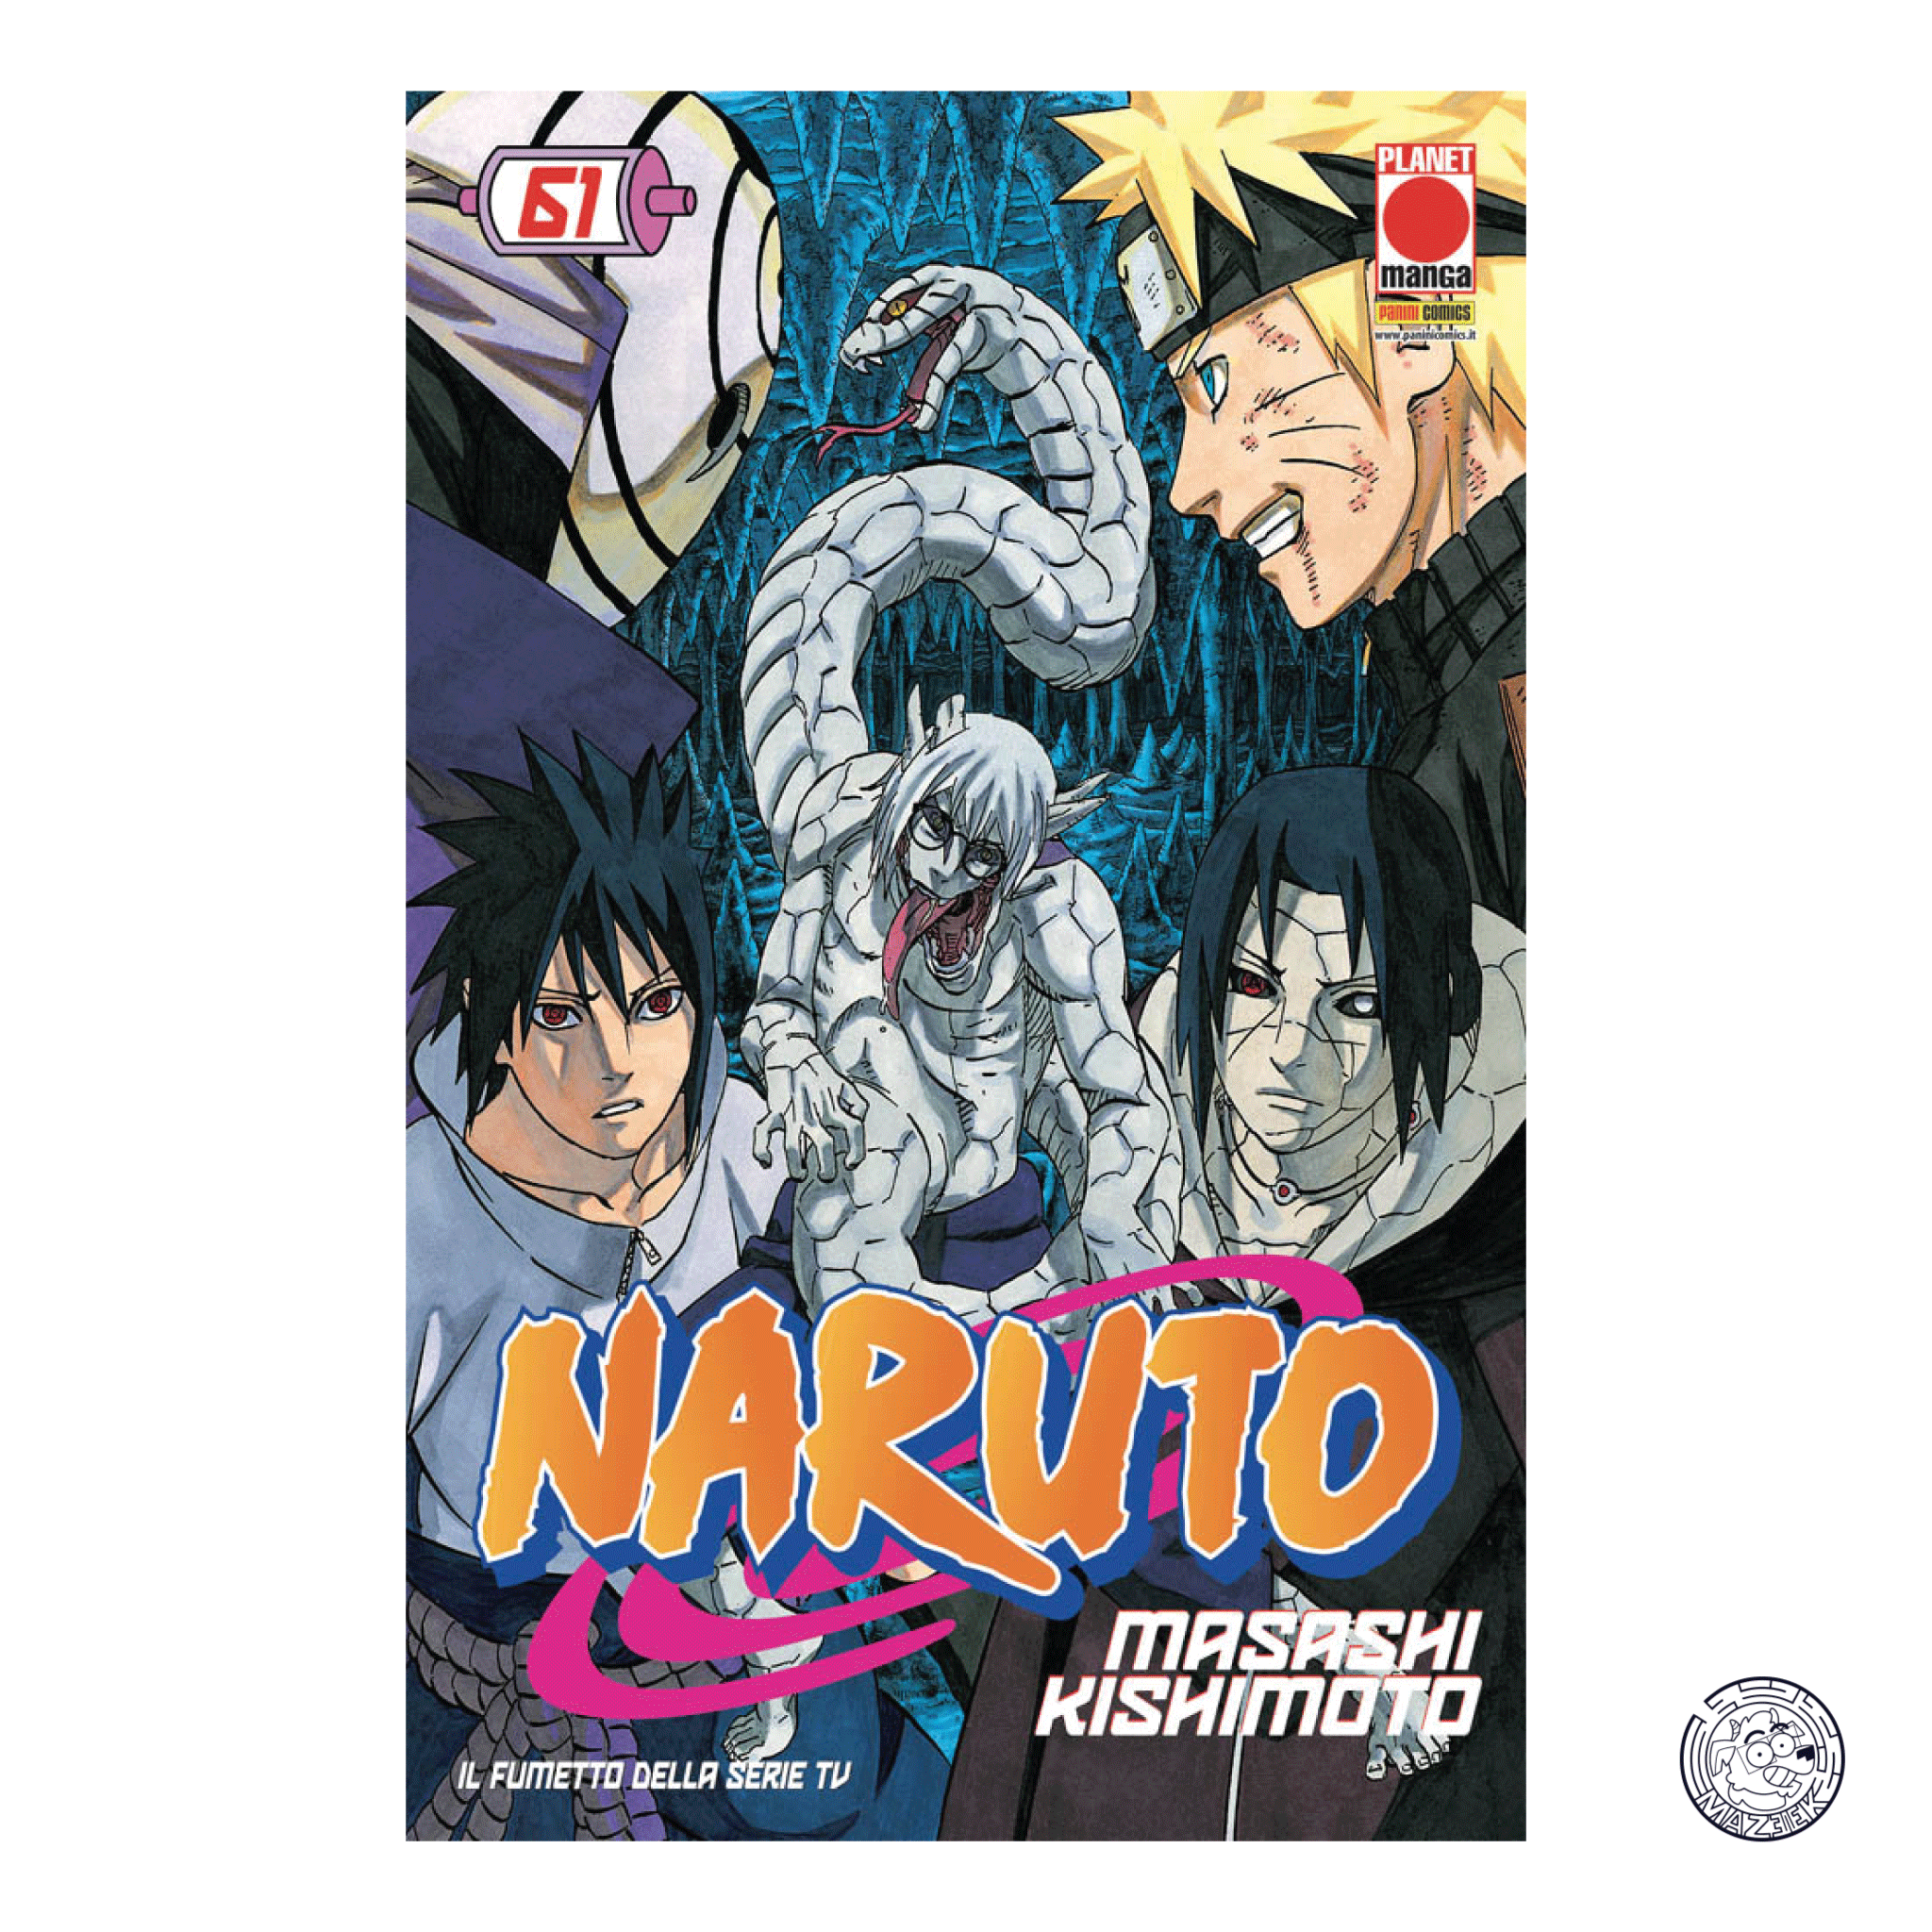 Naruto The Myth 61 - Reprint 2